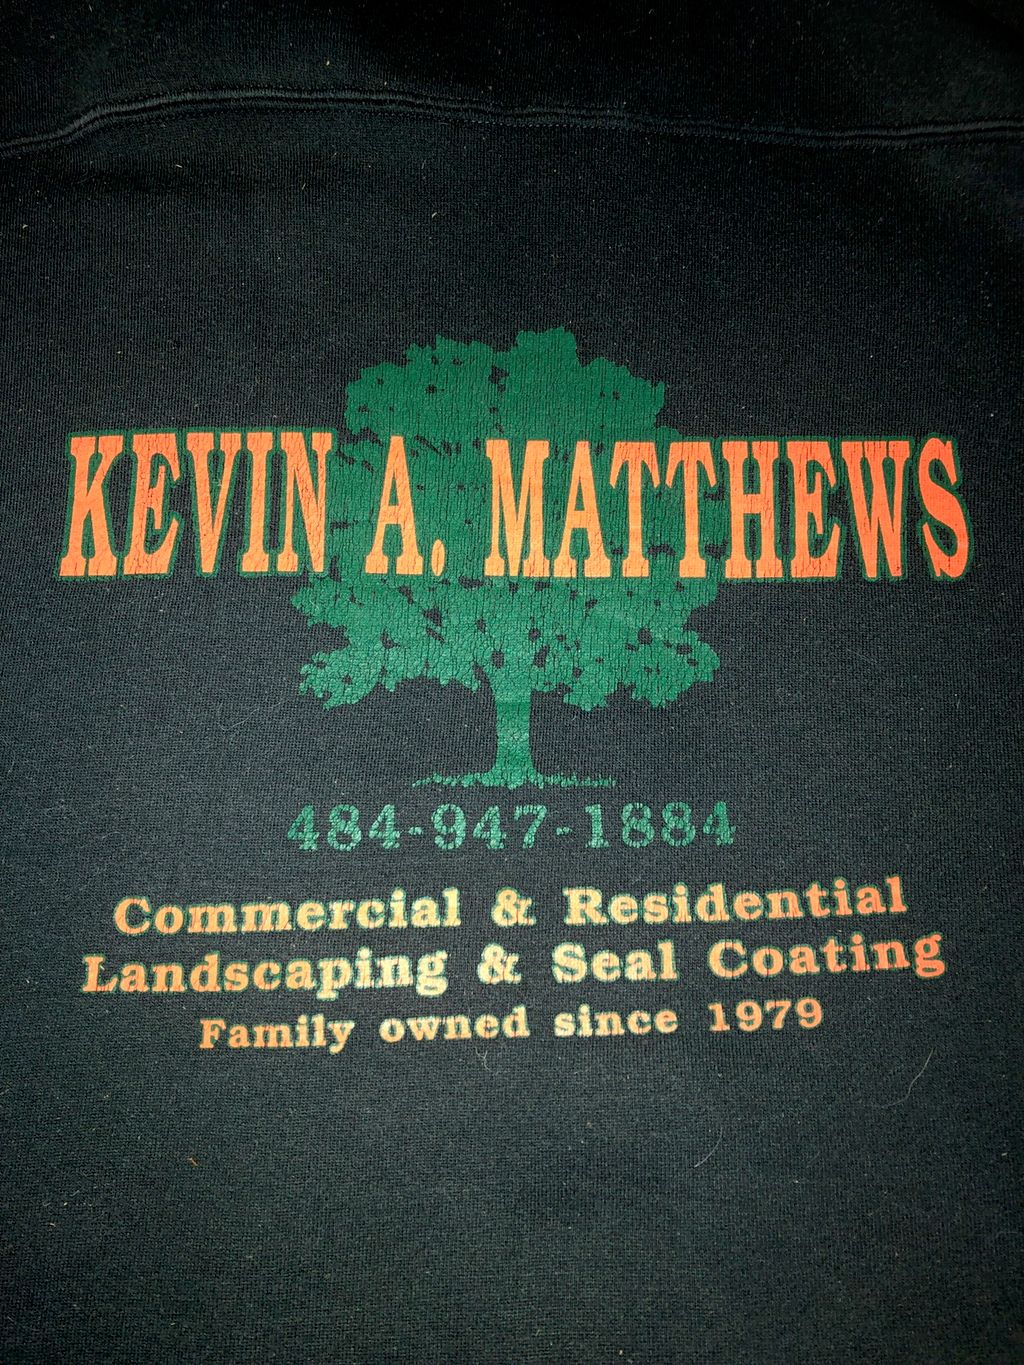 Kevin Matthews Landscaping